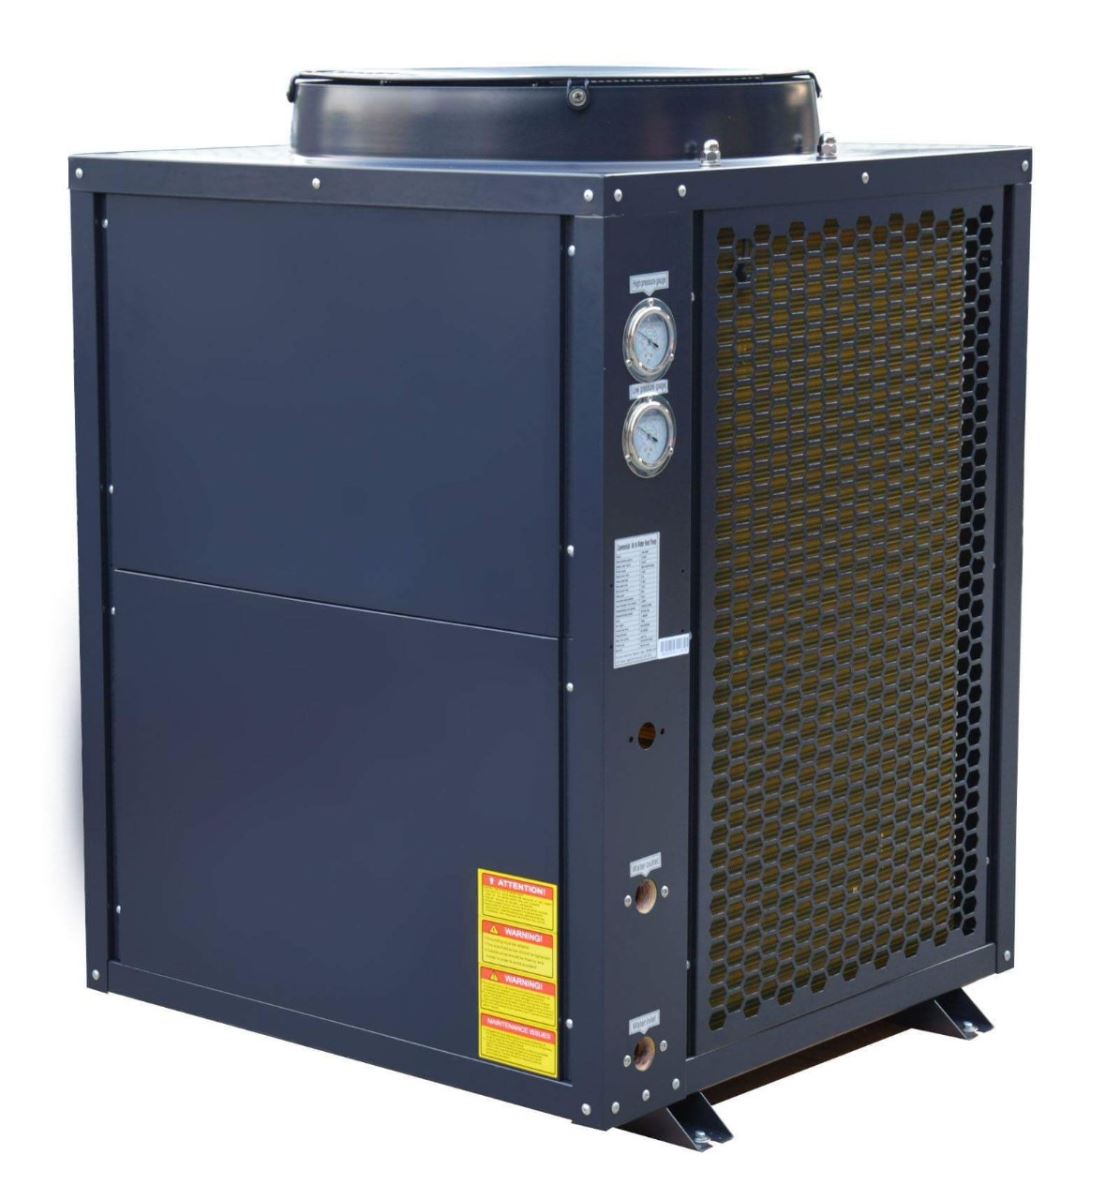 Lắp đặt Máy bơm nhiệt Heat Pump An Toàn - Tiết Kiệm - Hiệu Quả tại Hà Nội - Ảnh 2